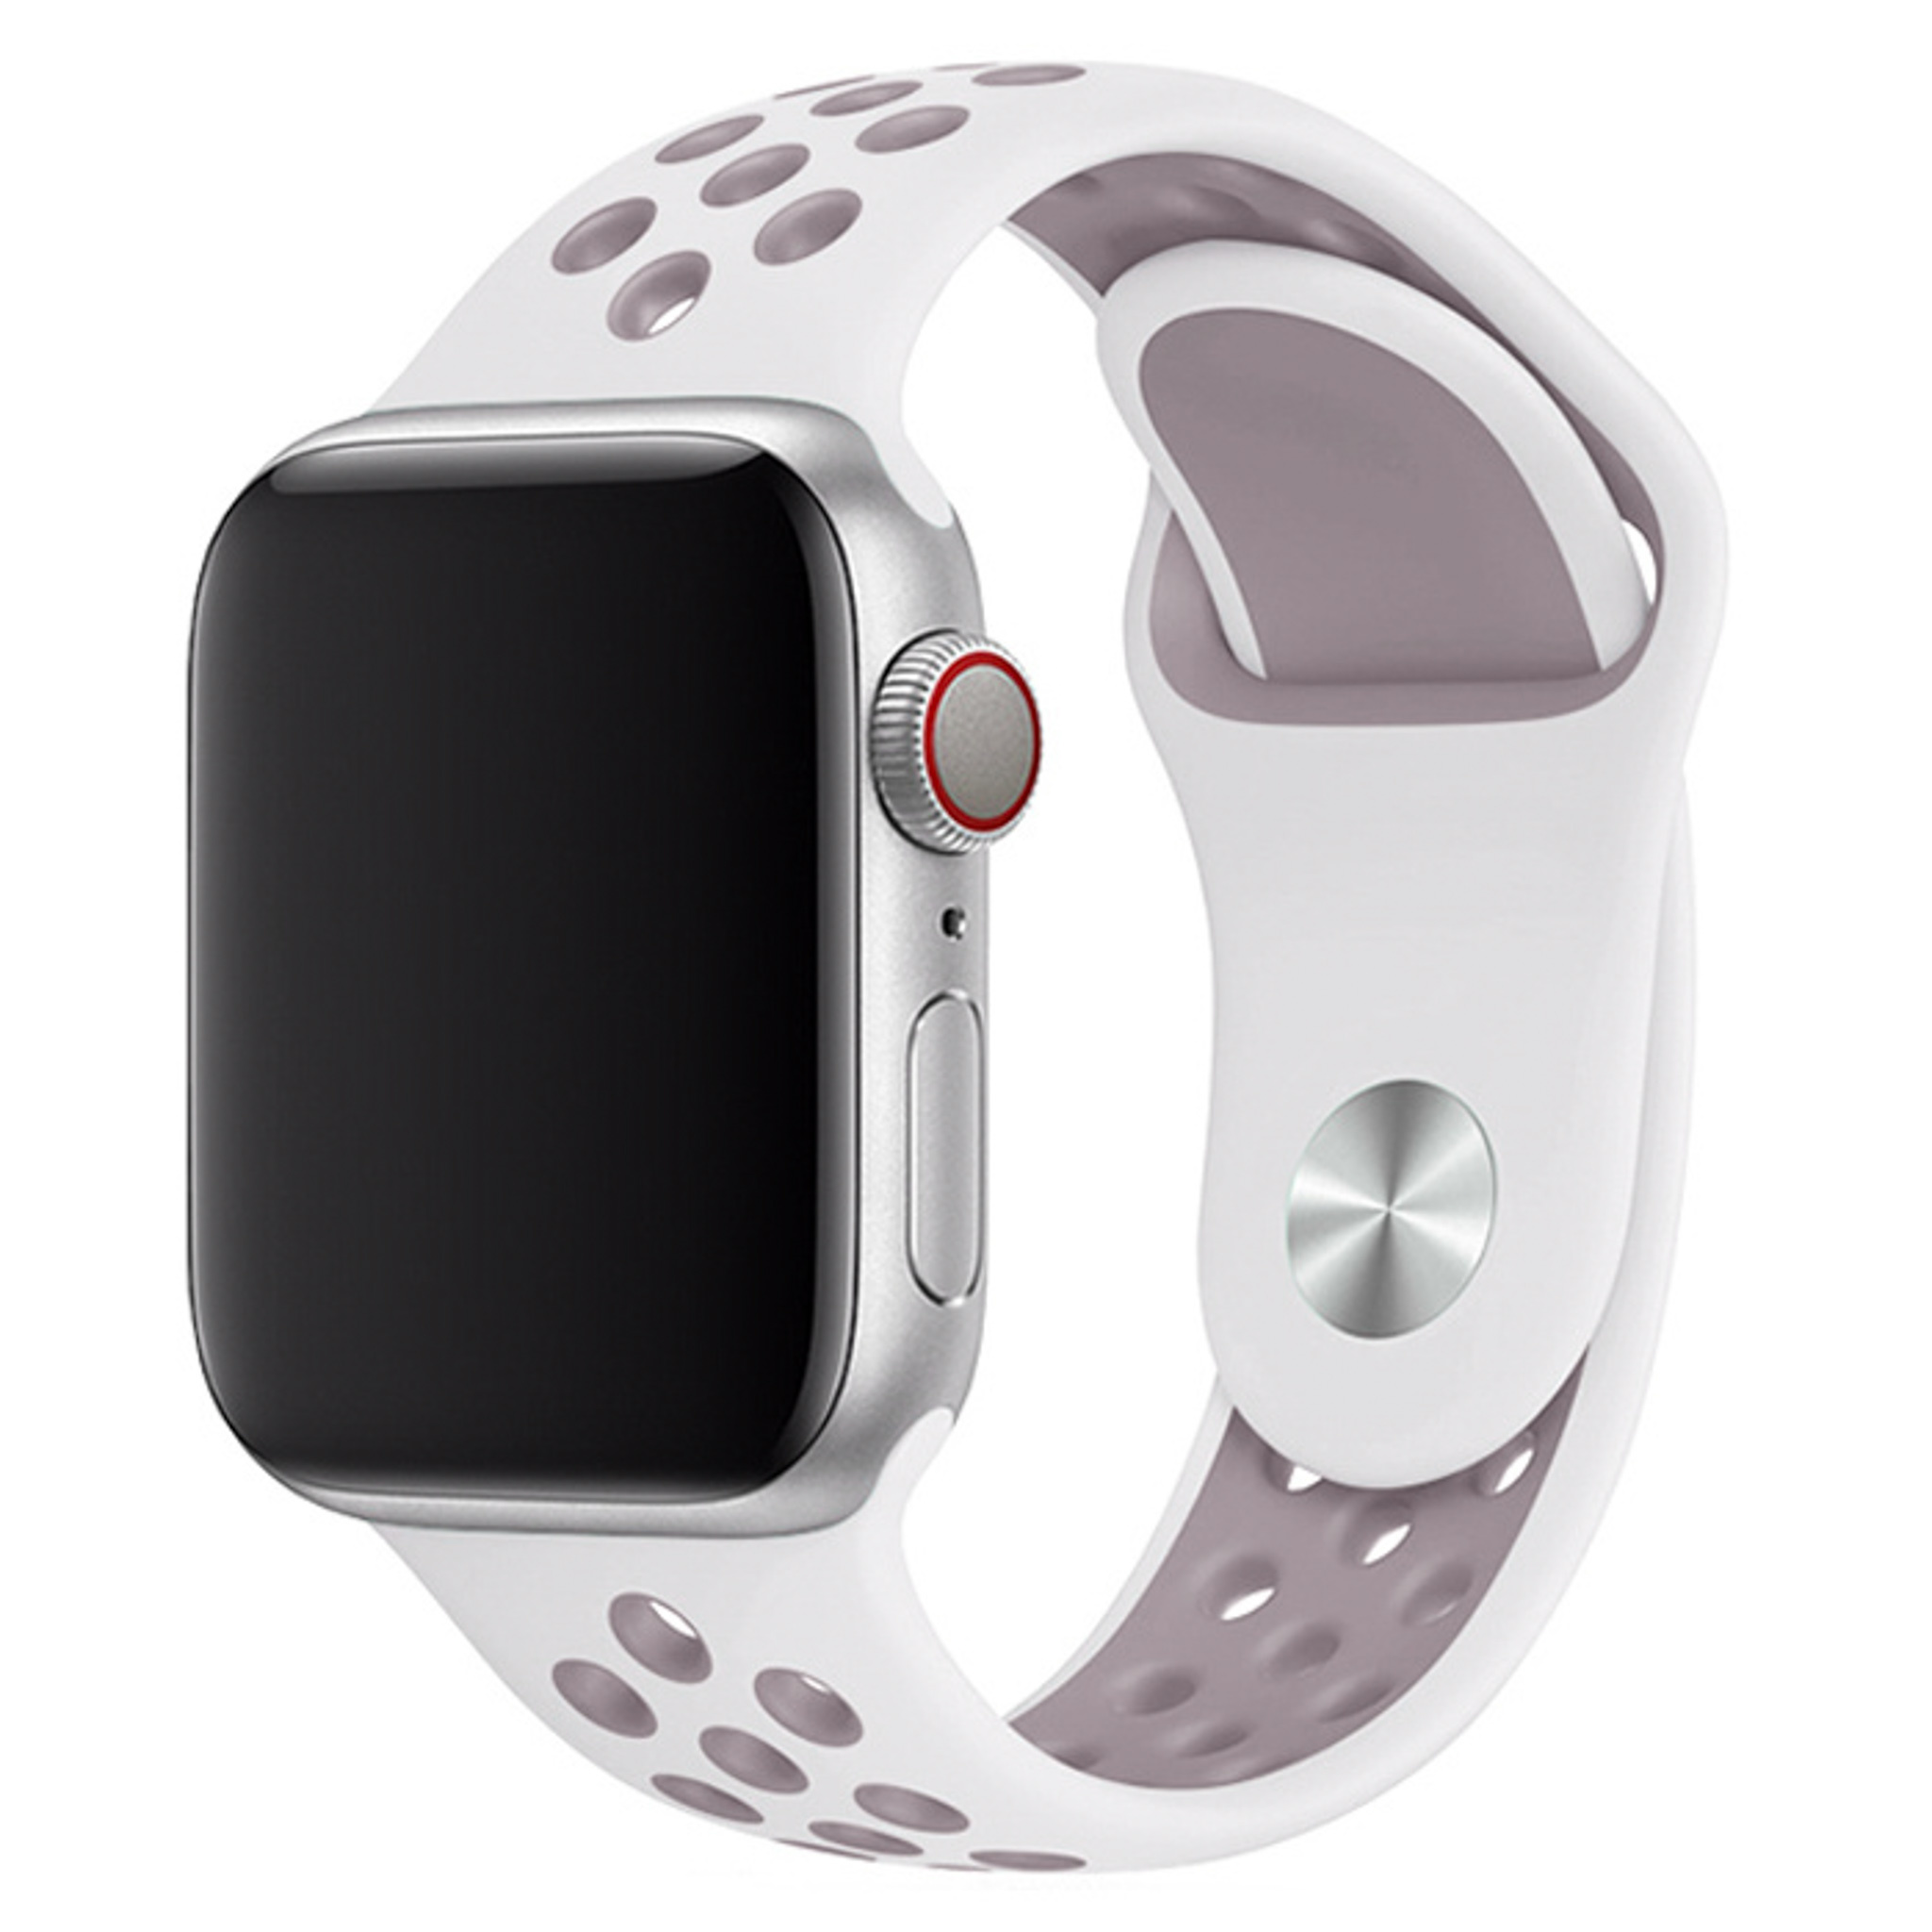  Apple Watch dupla sport szalag - fehér levendula